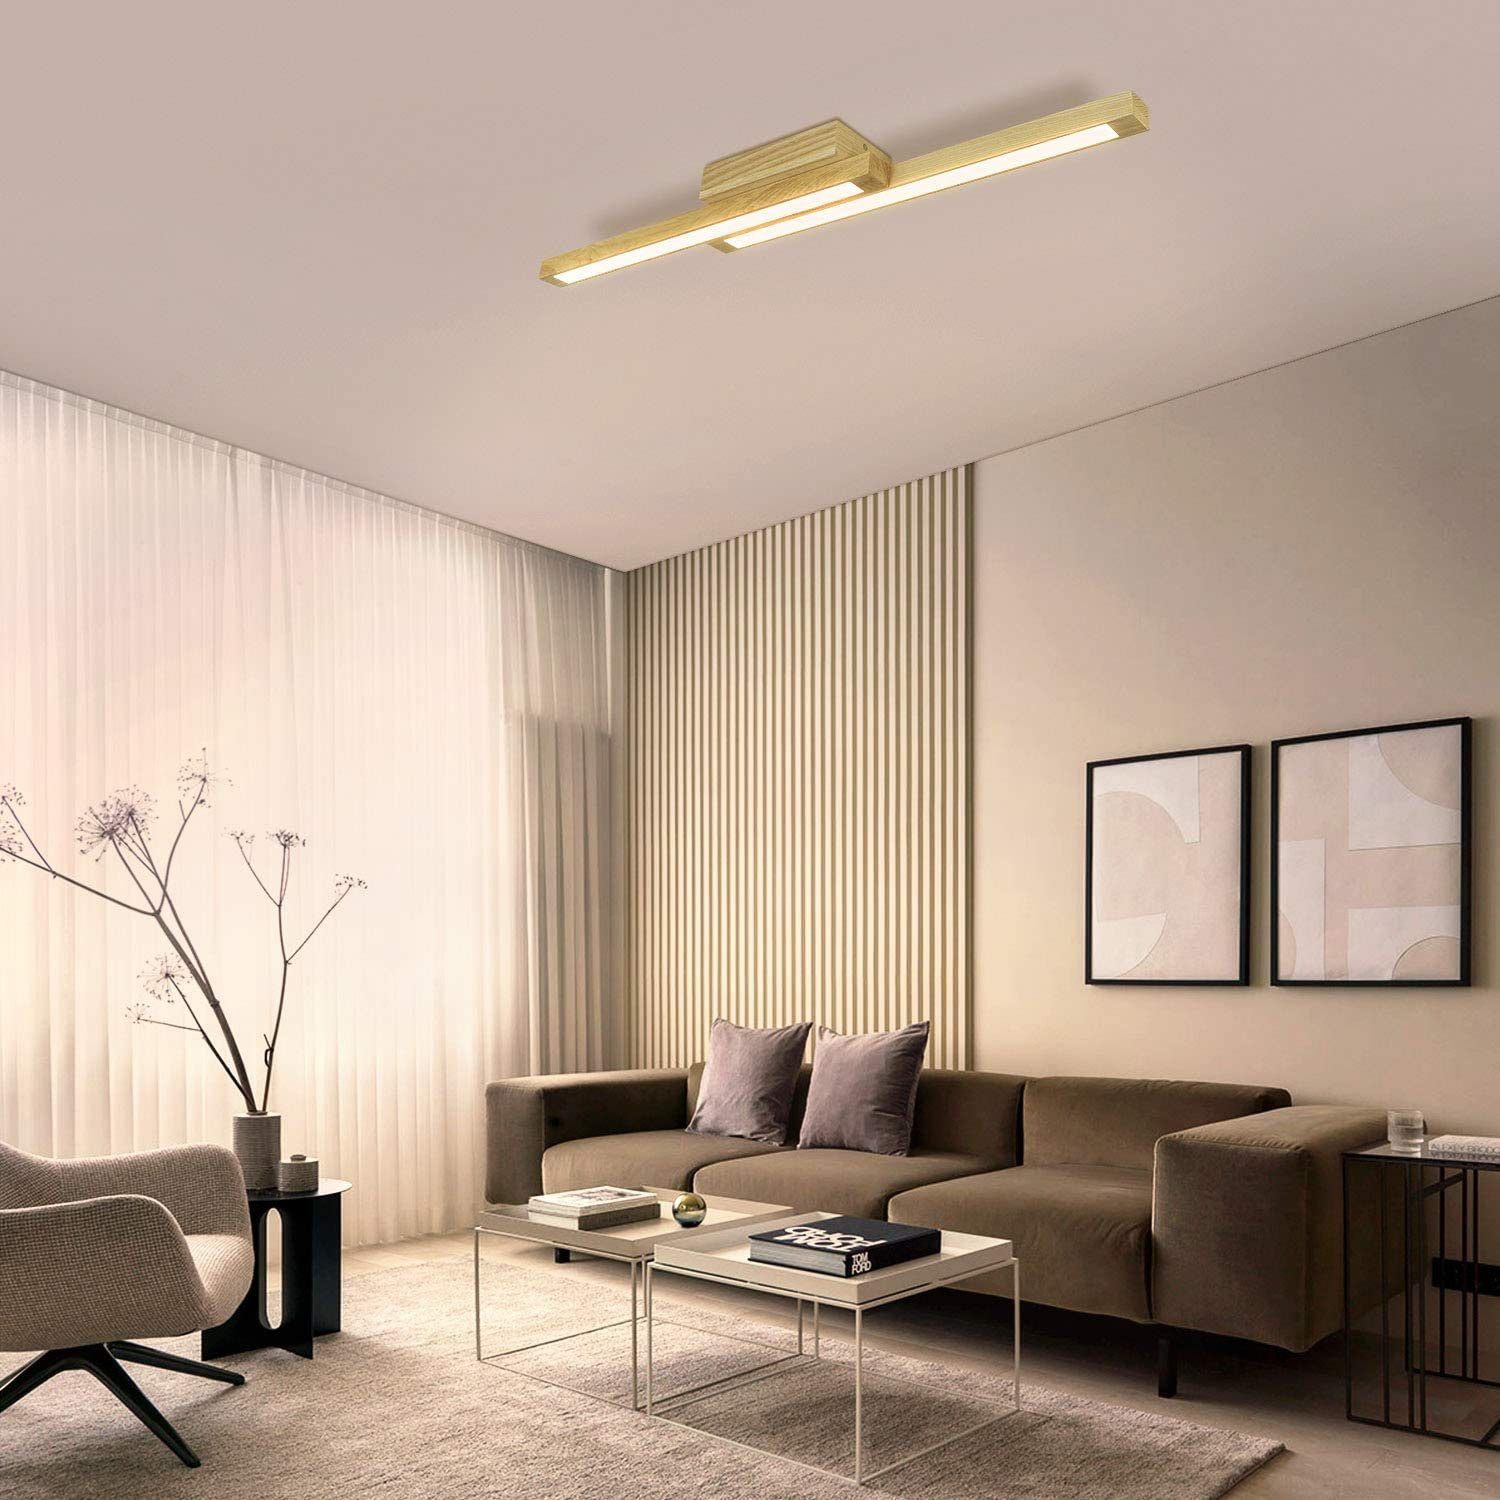 Ø30cm Büro Küche für Schlafzimmer Wohnzimmer Flur LED Deckenleuchte Holz 24W Ketom Deckenlampe Rund Modern 3000K Warmweiß 2400LM Wohnzimmerlampe ersetzt 150W Glühlampe 